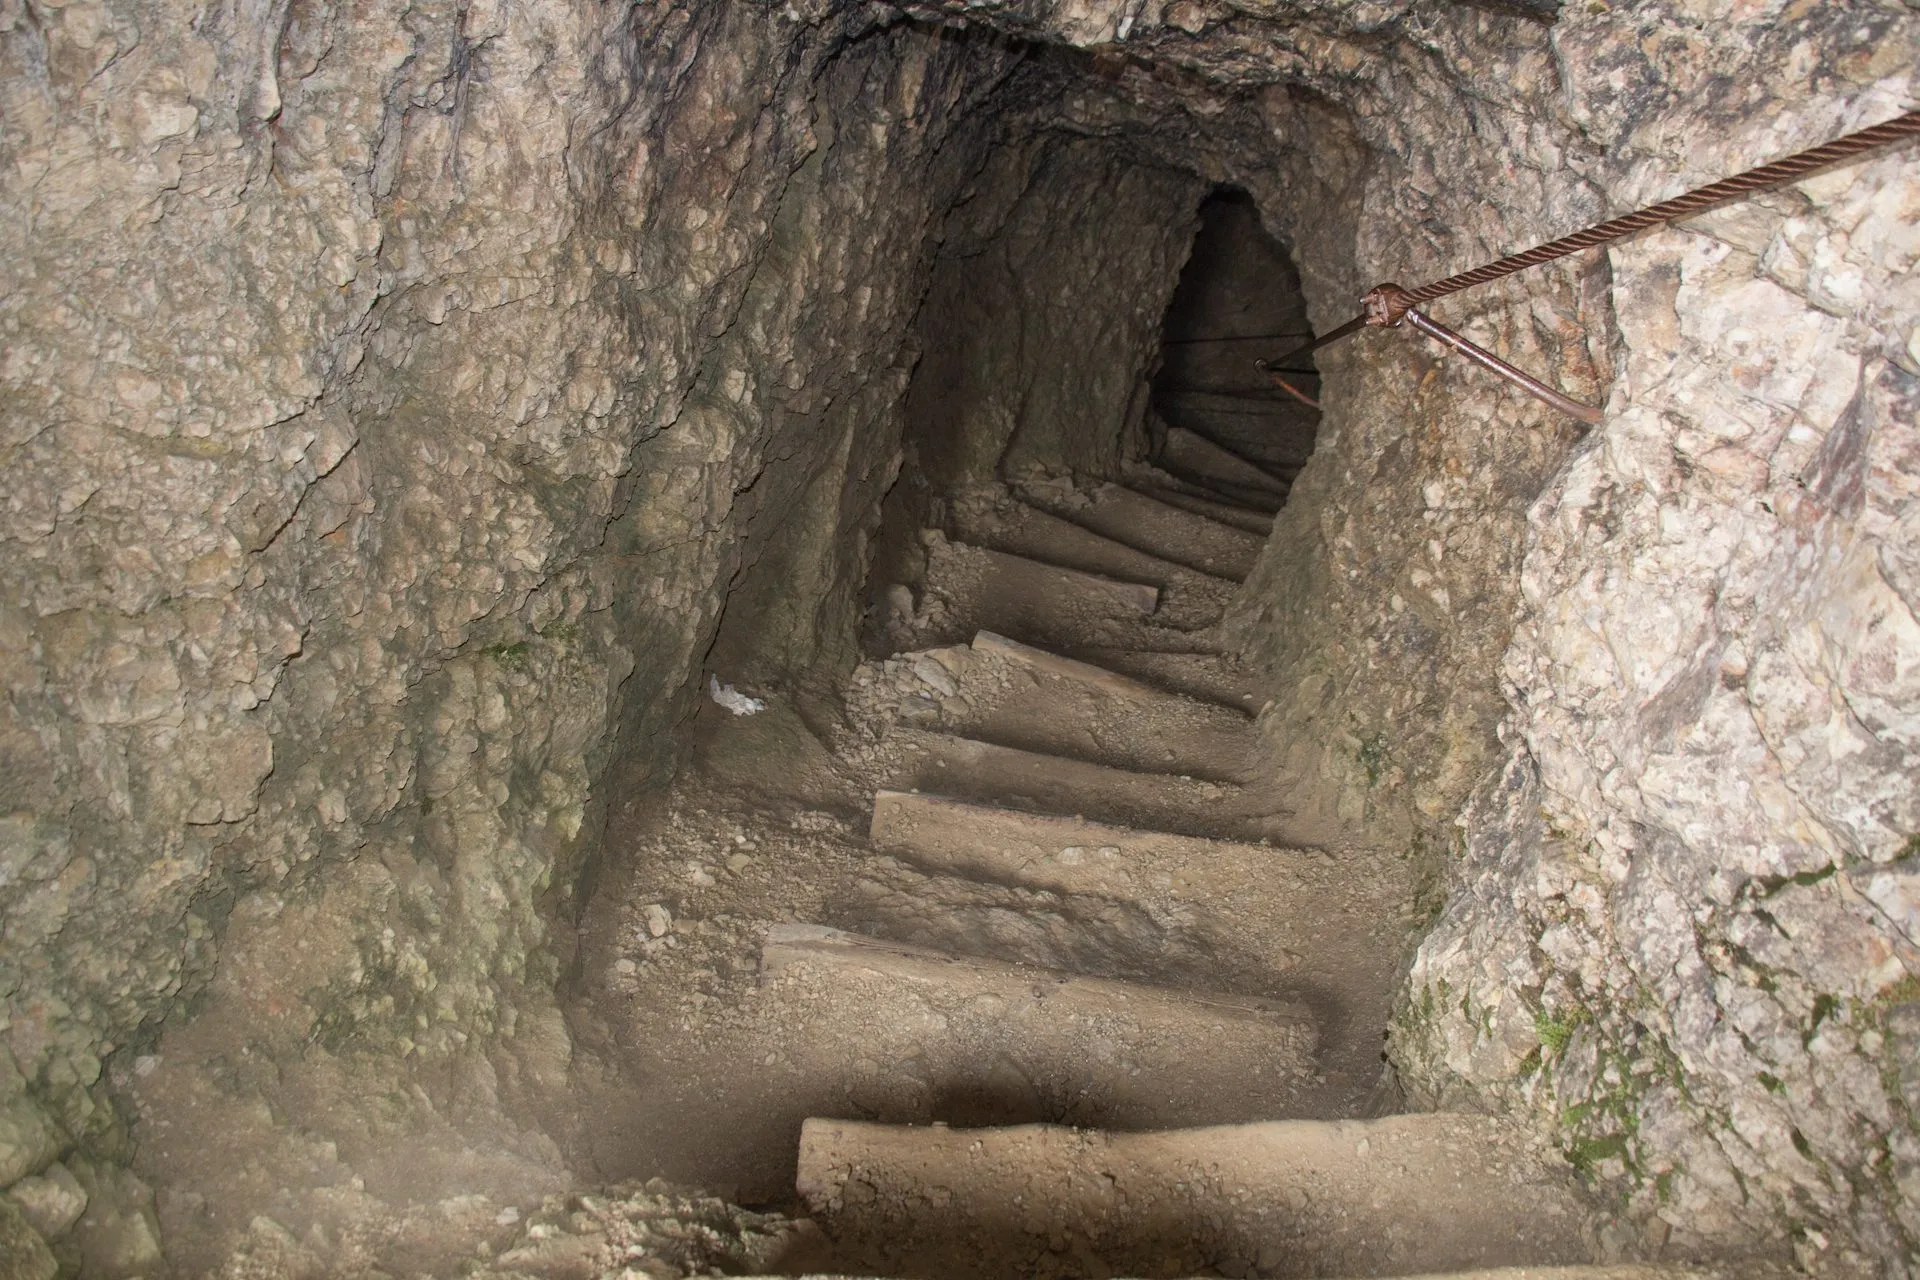 Lagazuoi-tunnlarna